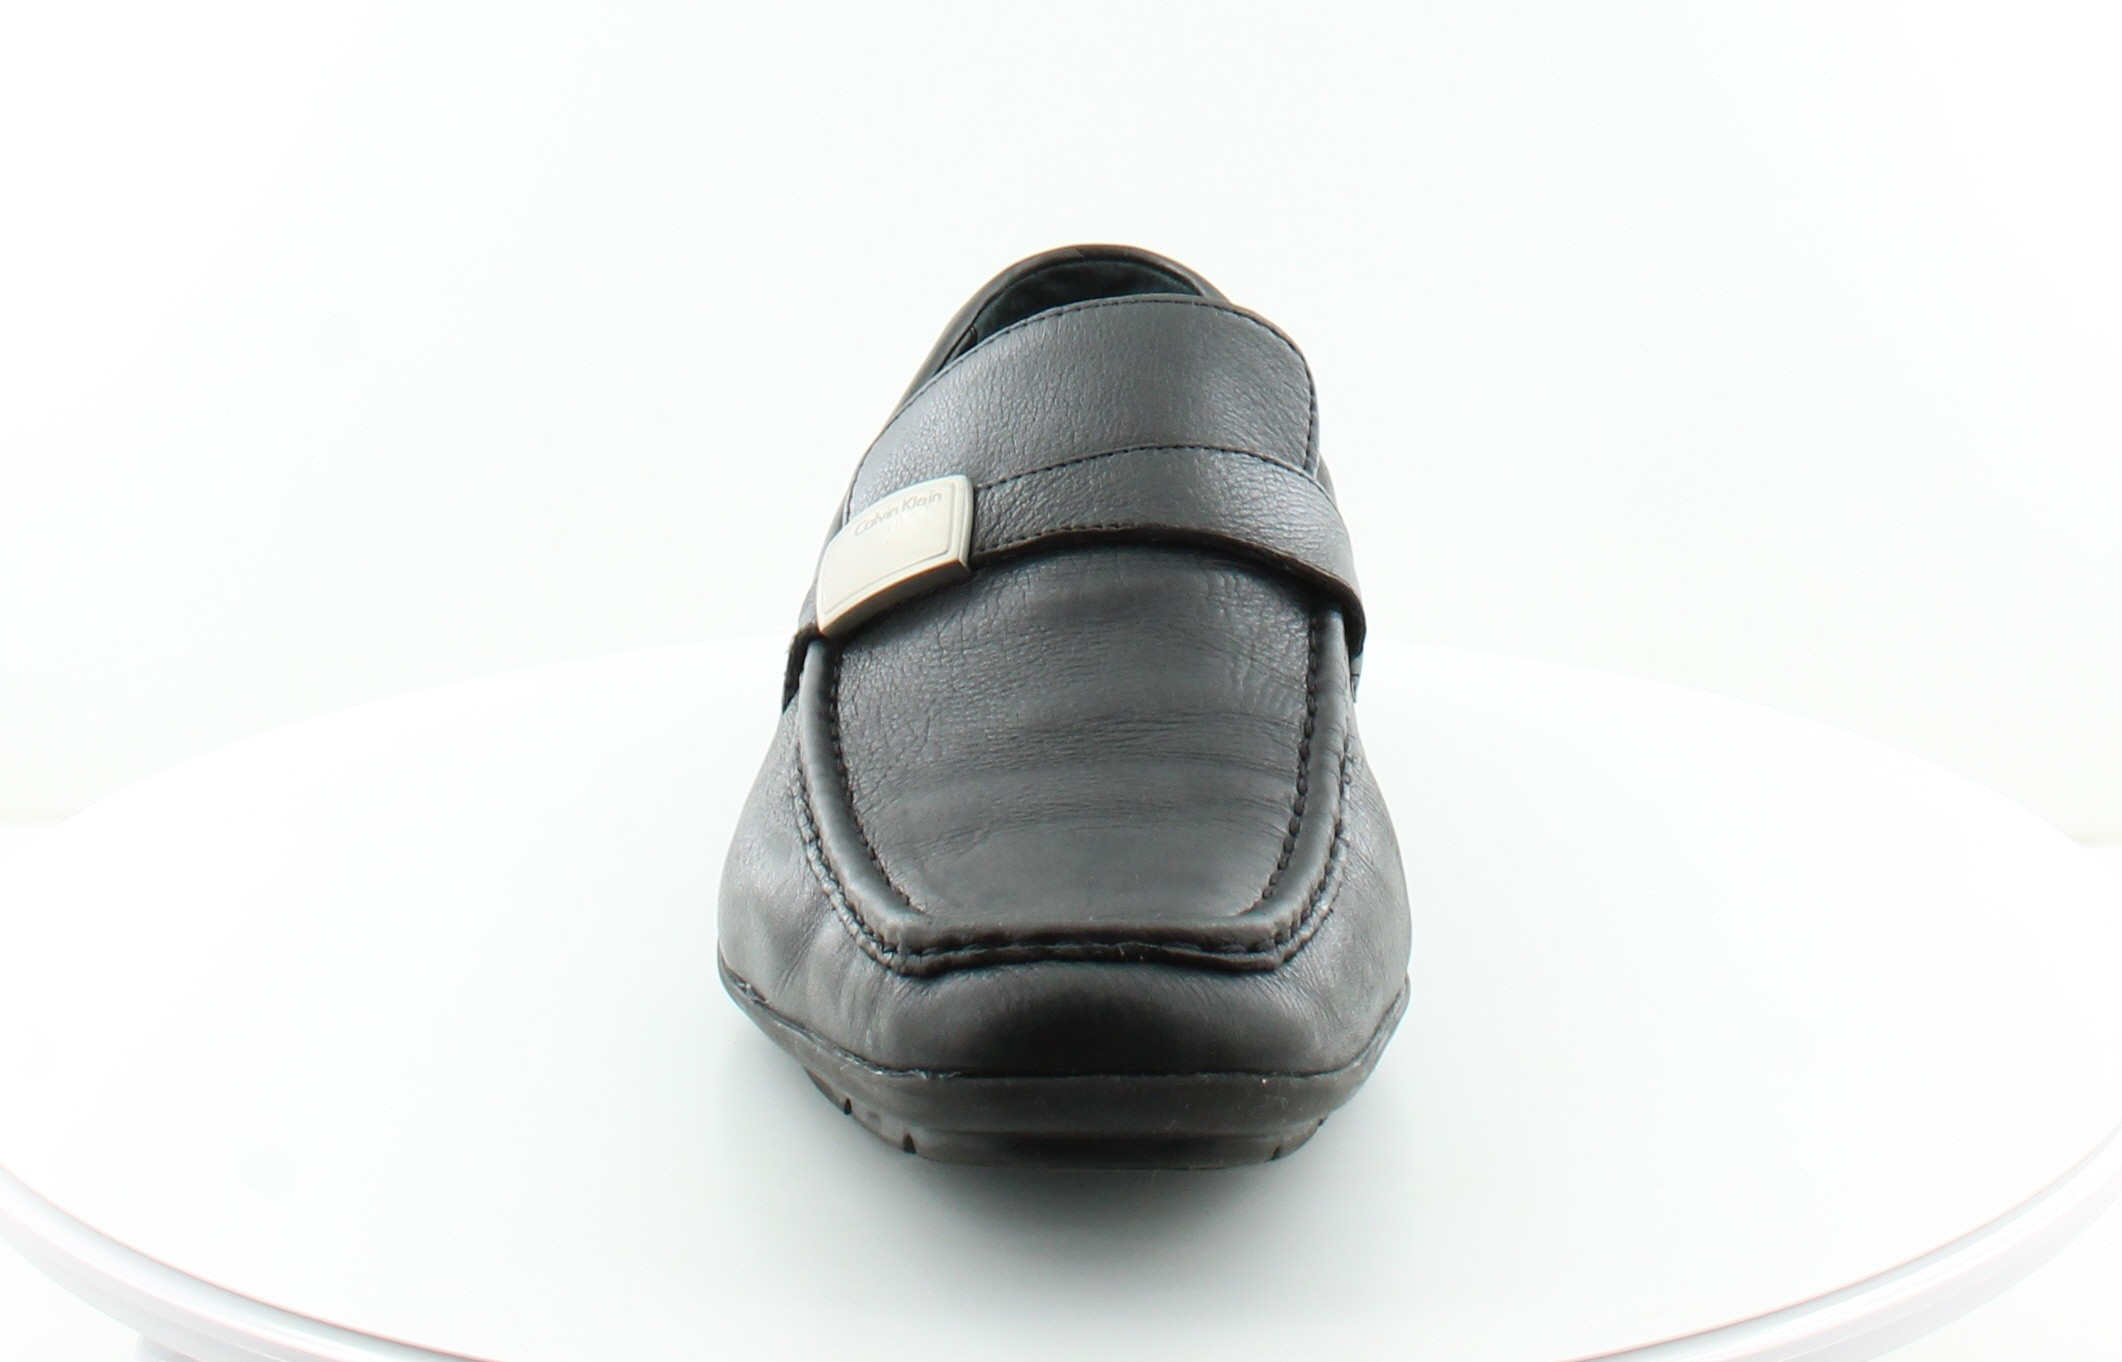 Calvin Klein Heron Black Mens Shoes Size 13 M Dress Formal MSRP $100 | eBay